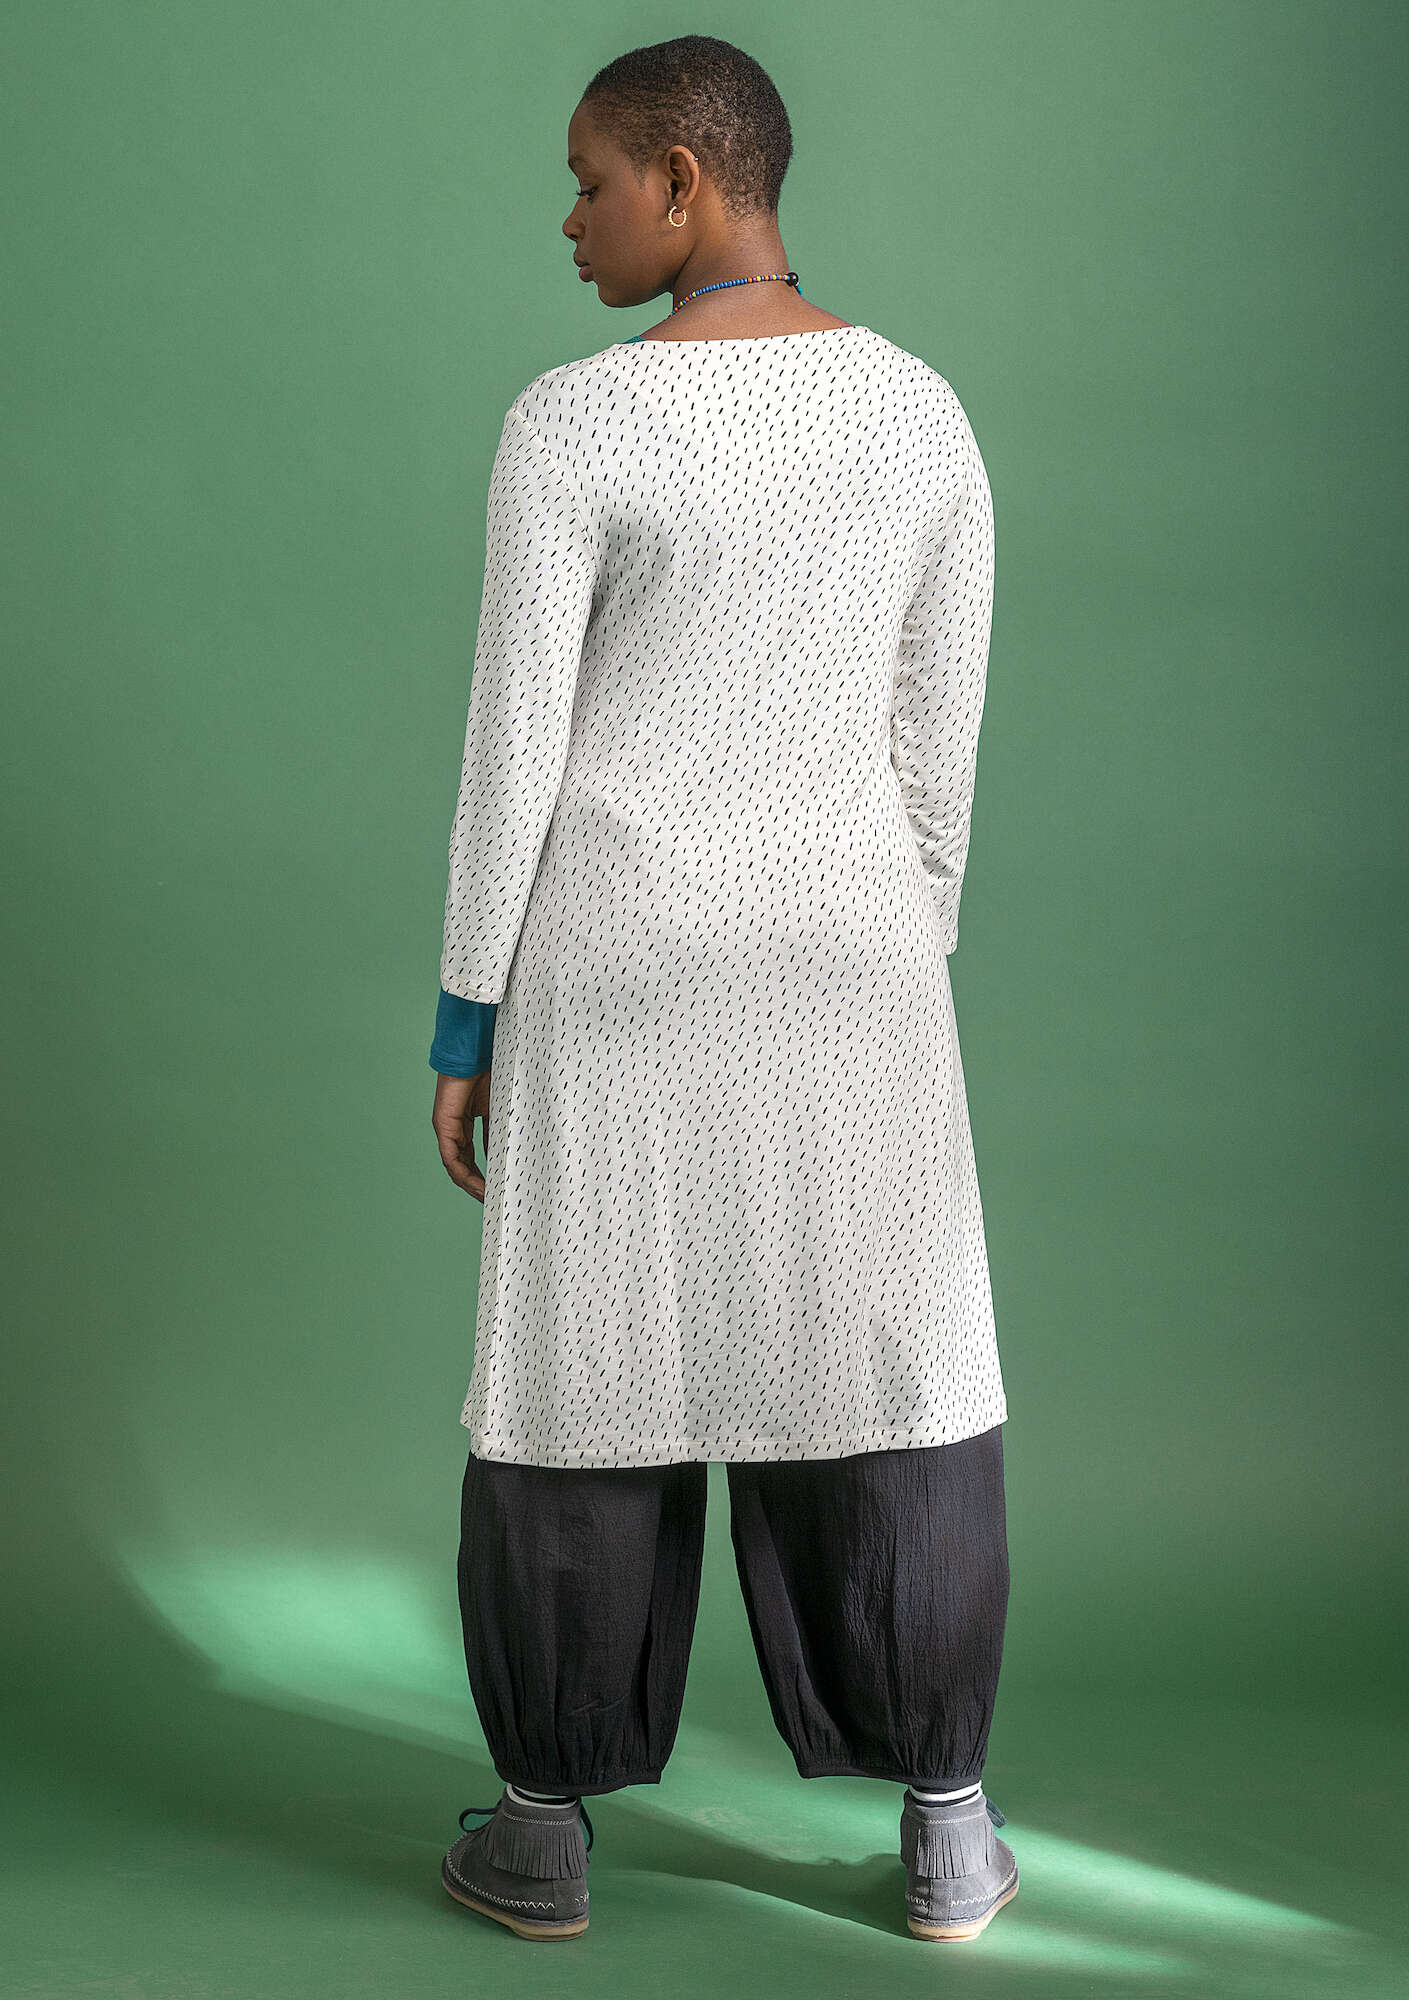 Jerseykleid ecru/patterned